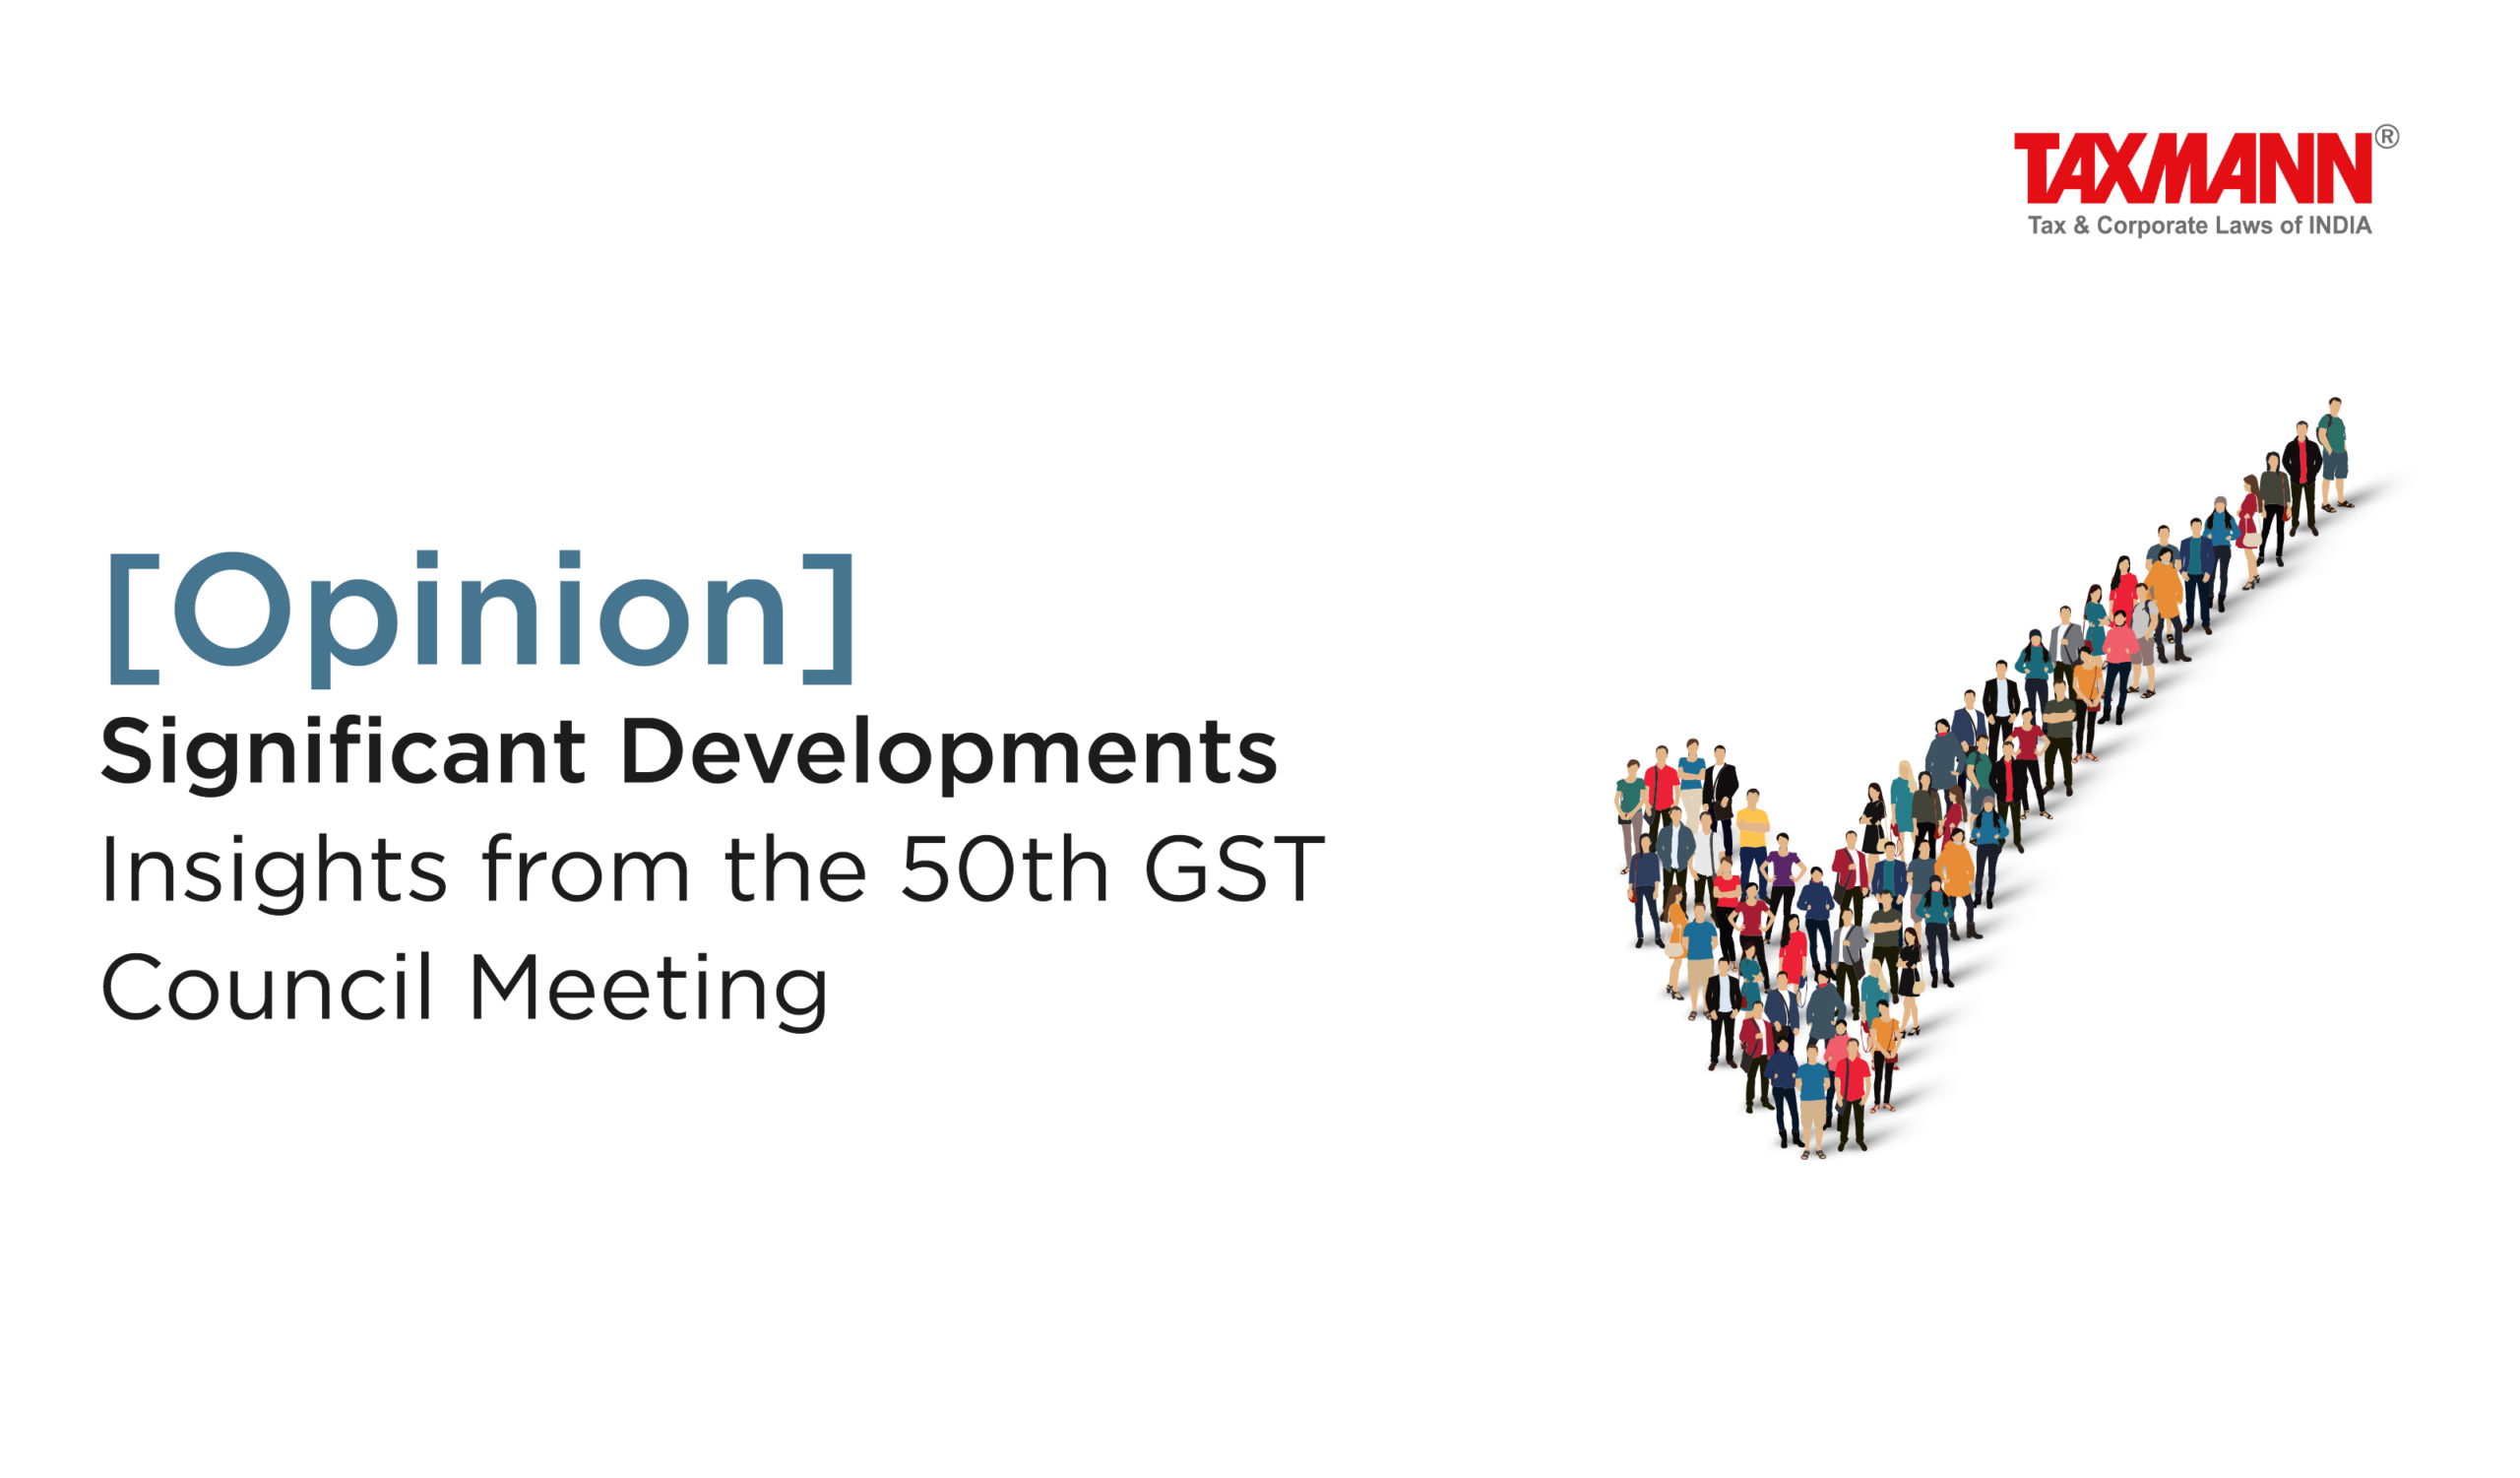 50th GST Council Meeting